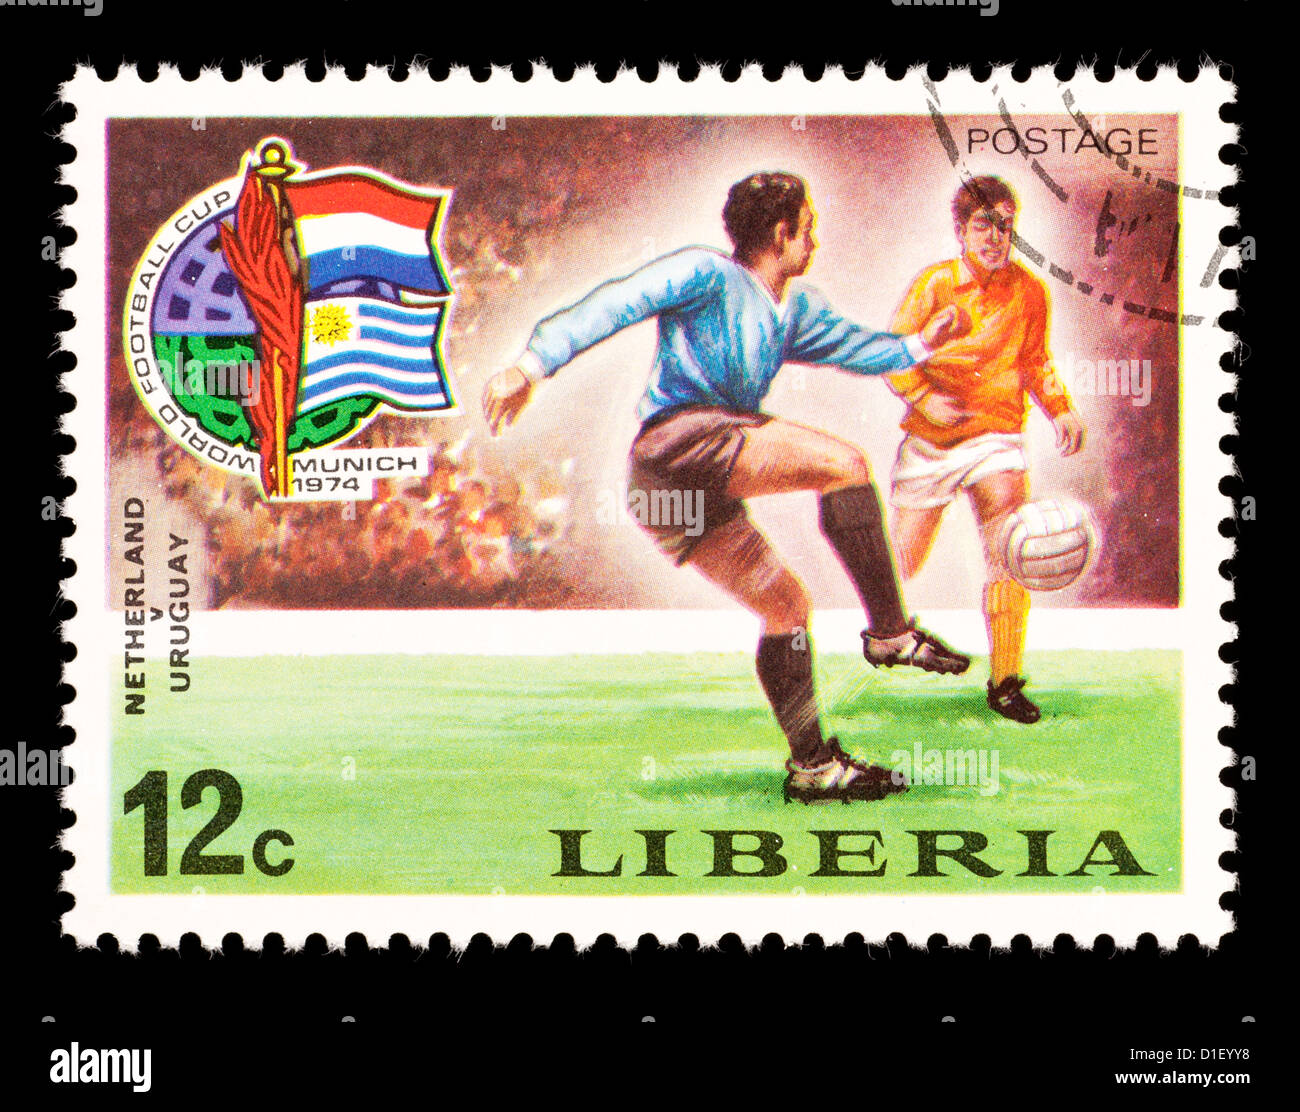 Briefmarke aus Liberia abbildenden Fußball-Spieler, für die Fußball-Weltmeisterschaft 1974 in München ausgestellt. Stockfoto